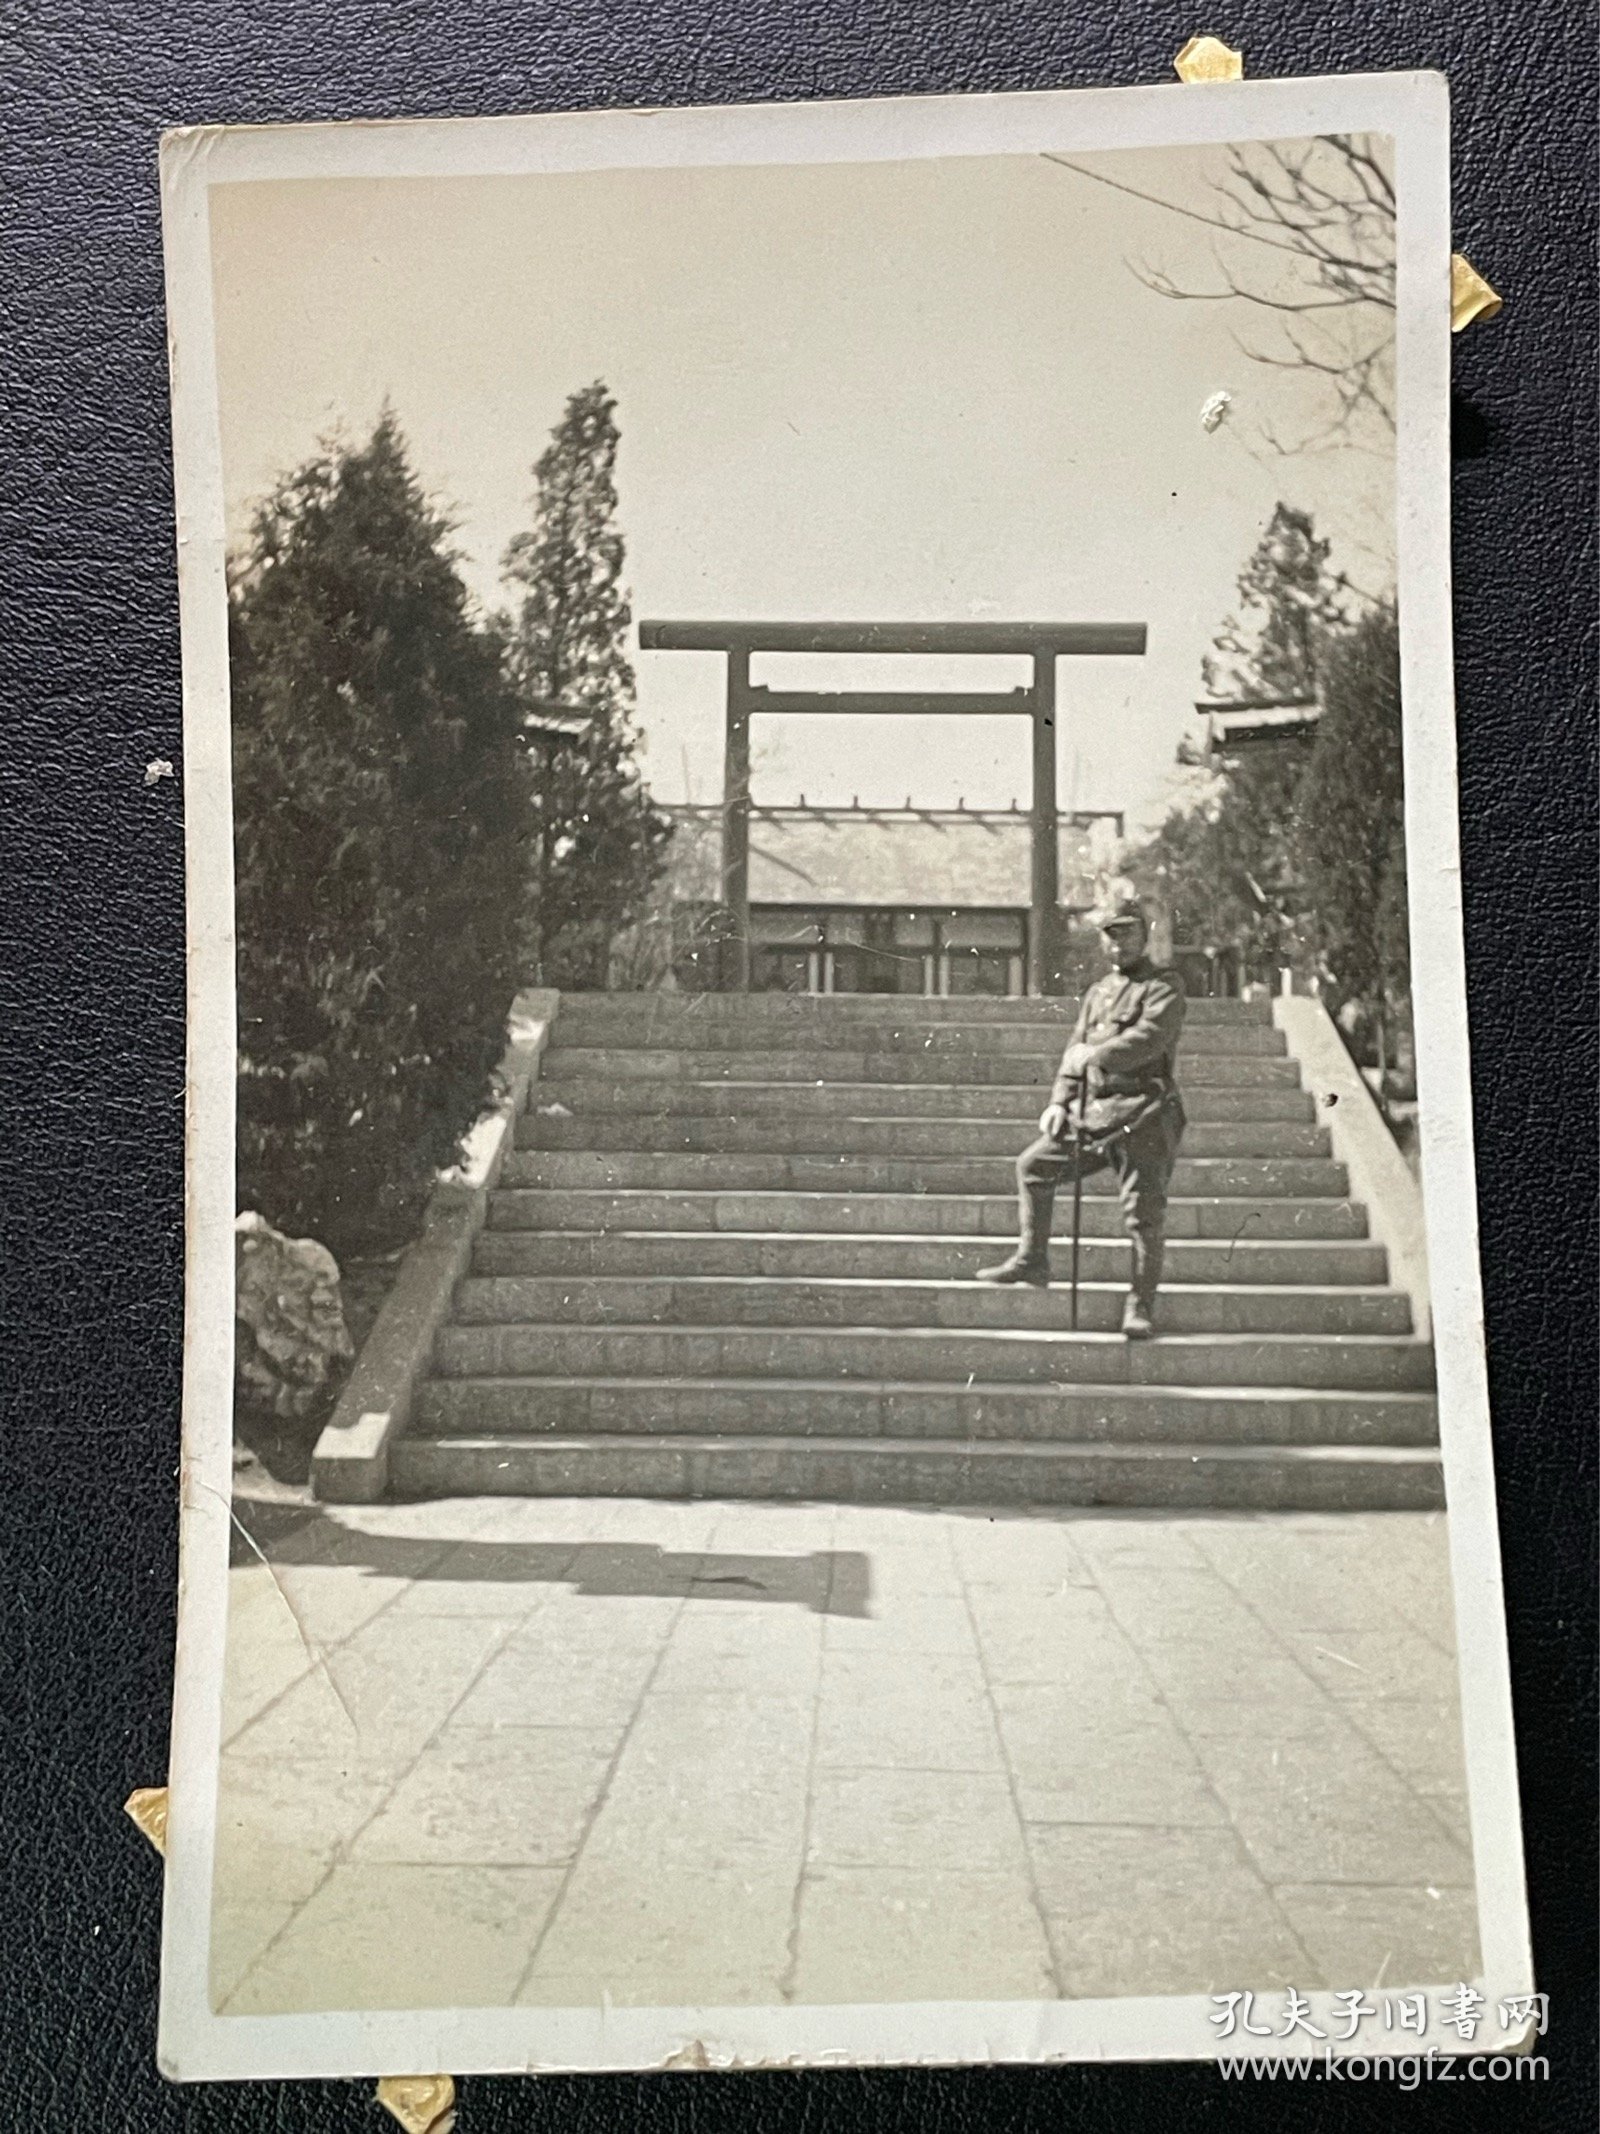 民国天津神社前日本军人照片